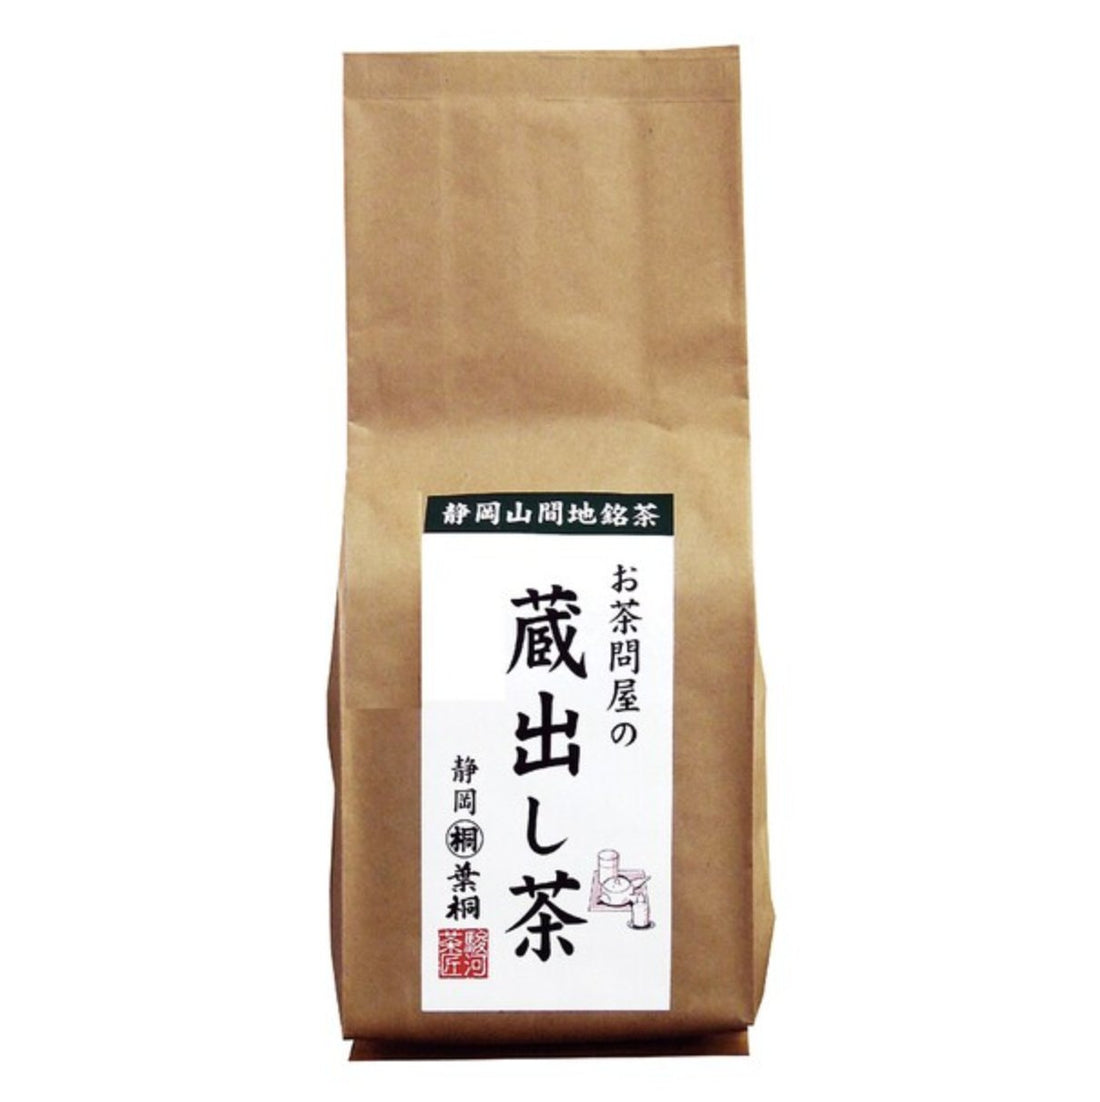 Hagiri Tea Wholesaler Storehouse Tea 300g - NihonMura